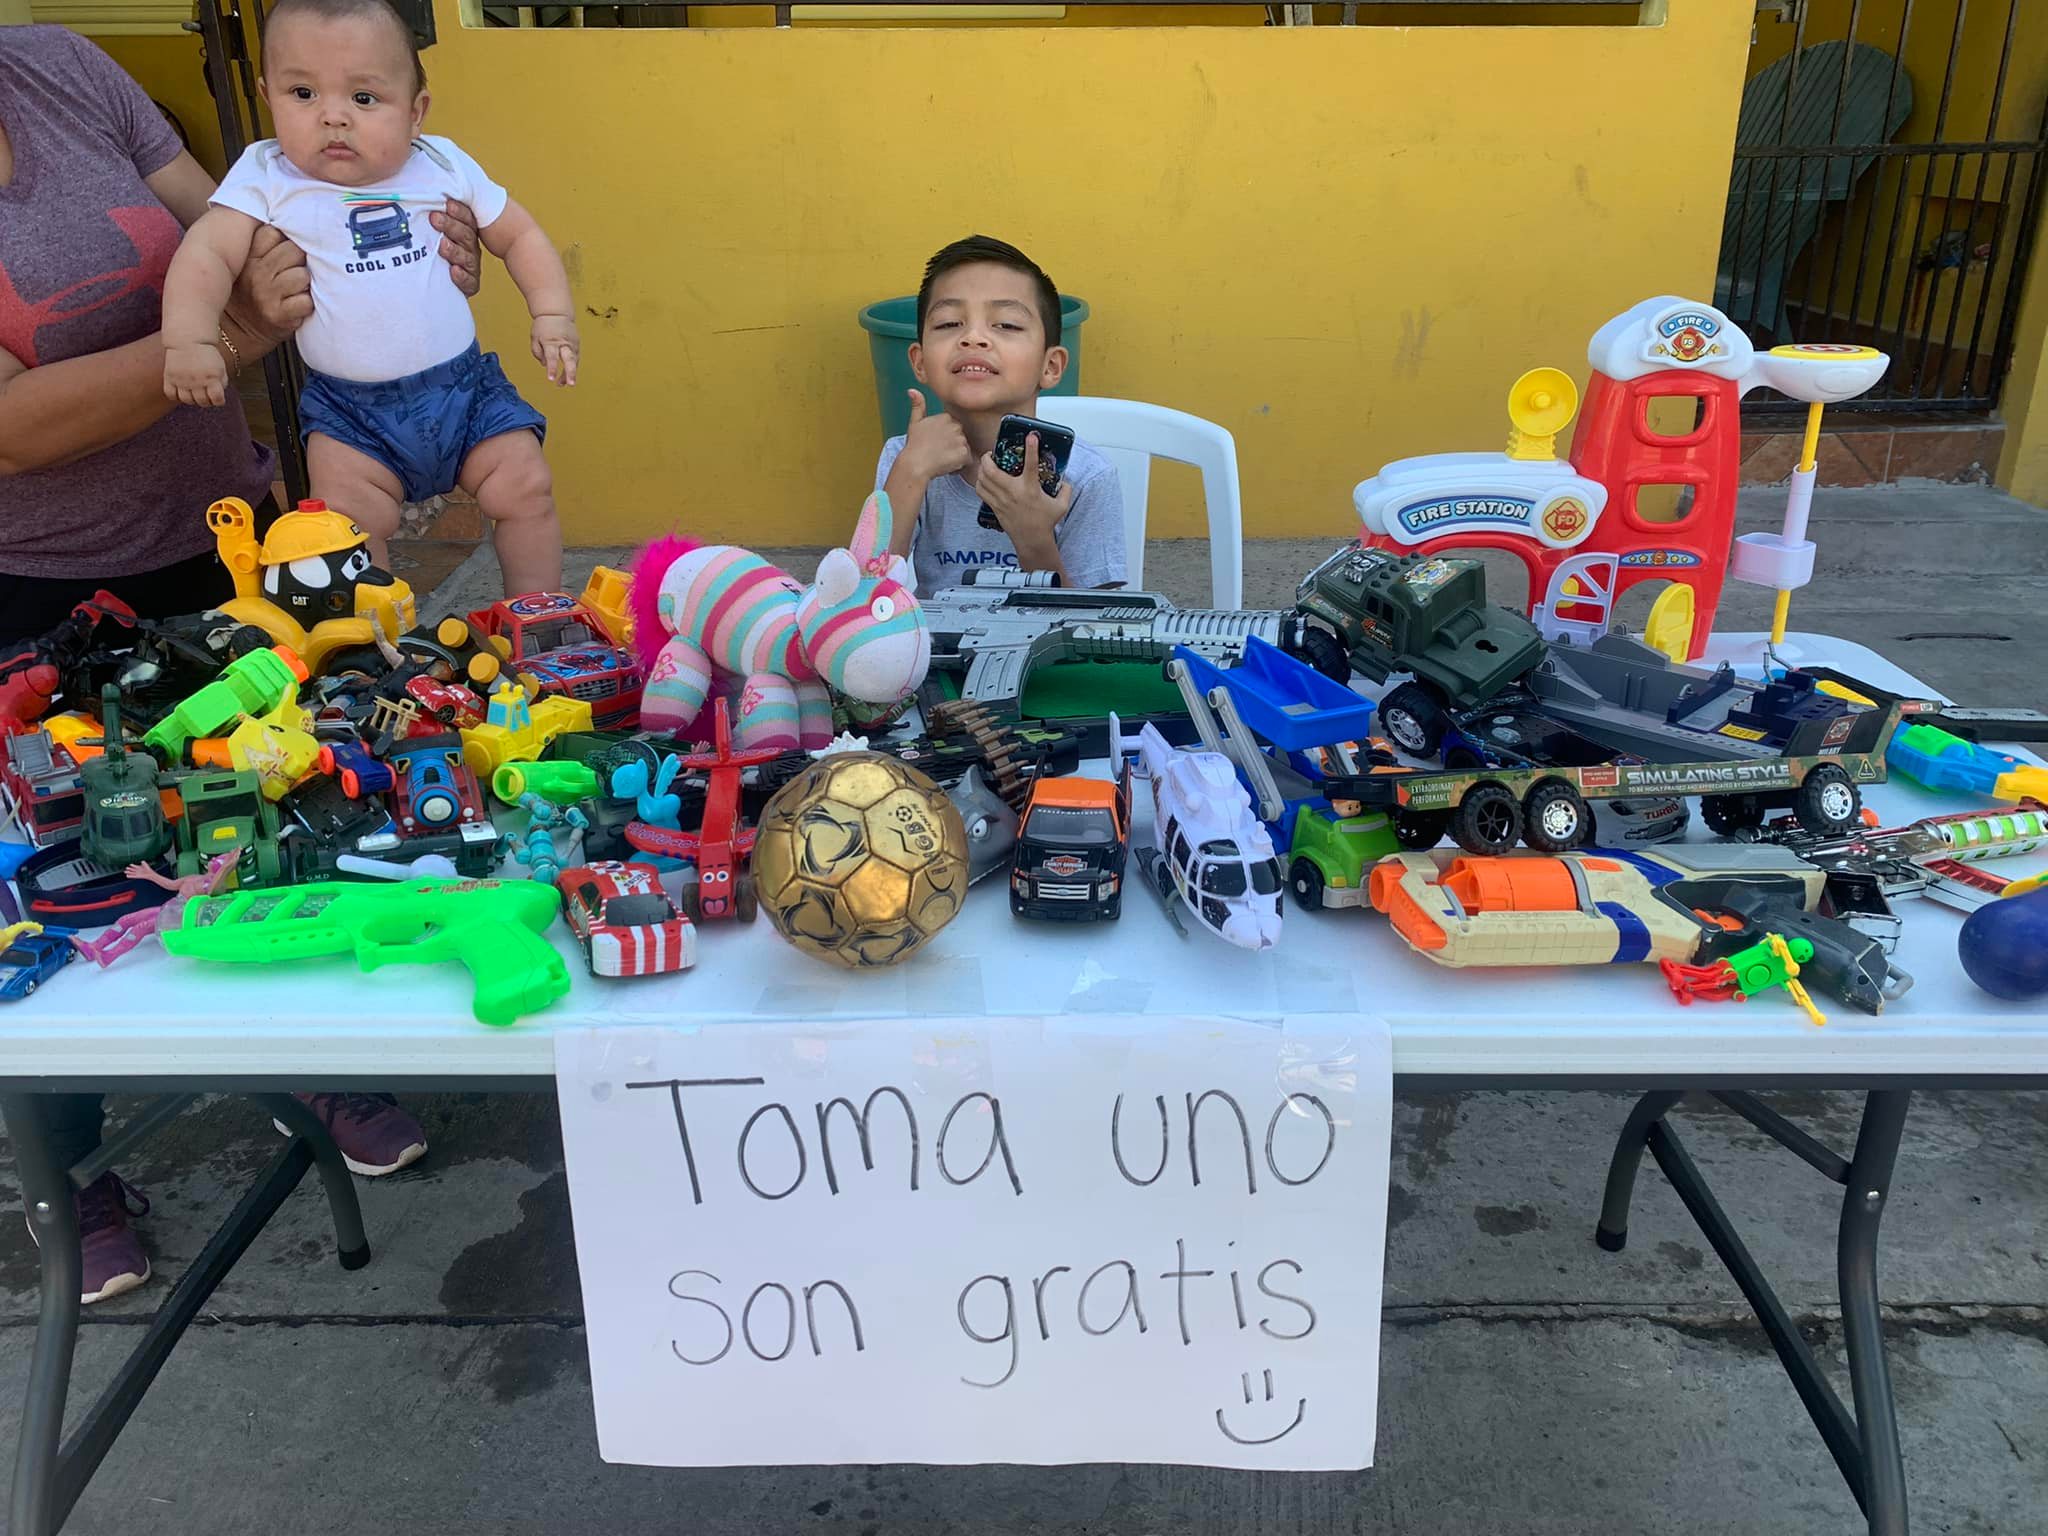 Pequeño rifado: Niño regala sus juguetes a quienes no recibieron nada en Navidad